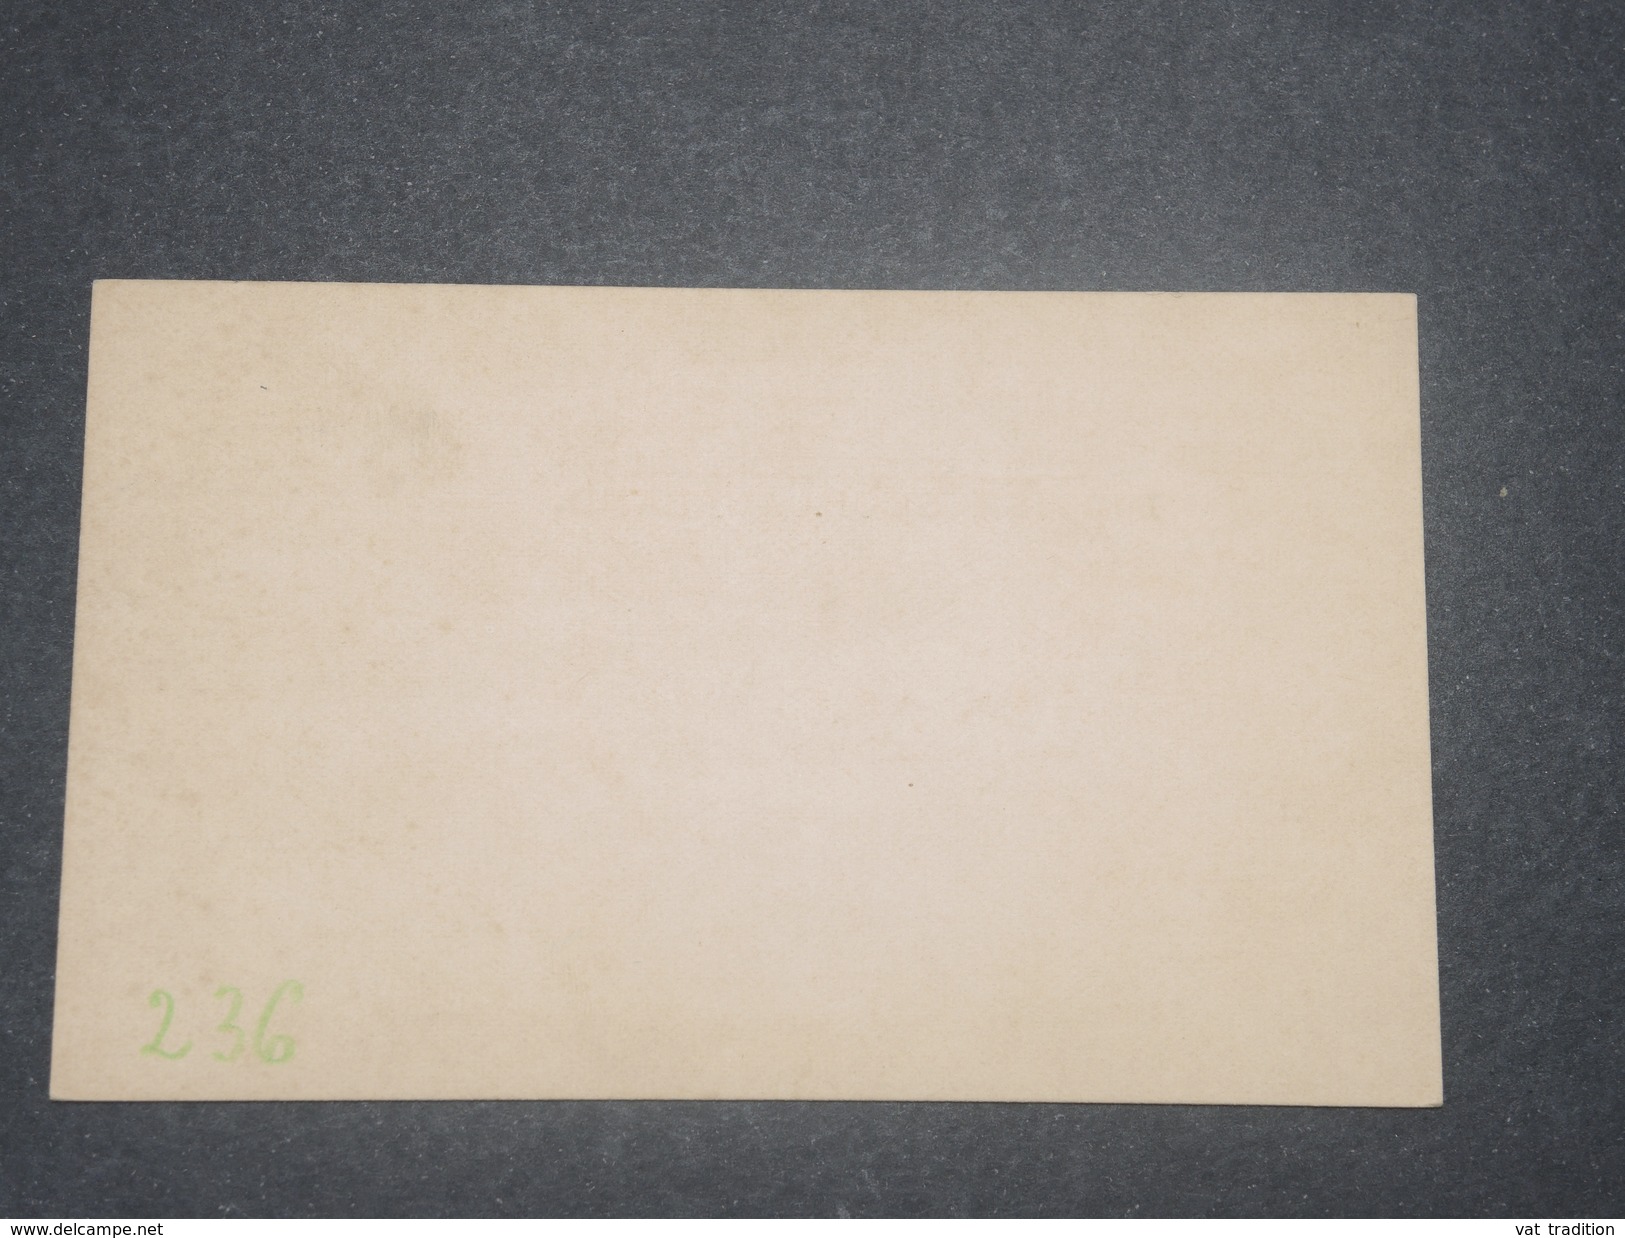 BECHUANALAND - Entier Postal Surchargé Non Voyagé - L 8490 - 1885-1895 Colonia Britannica